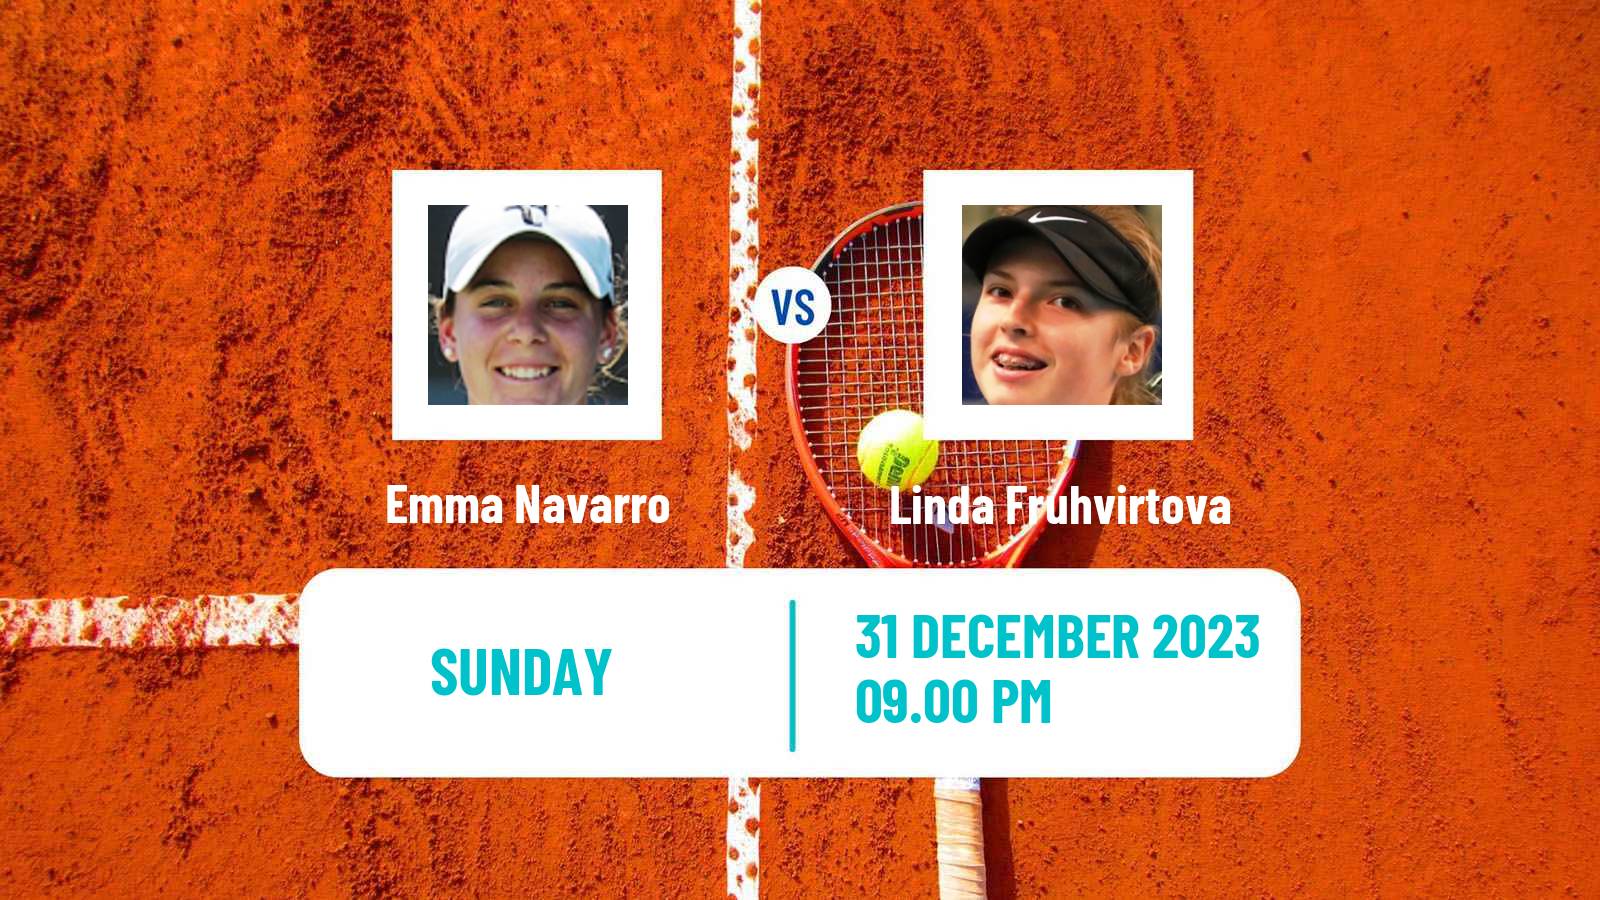 Tennis WTA Auckland Emma Navarro - Linda Fruhvirtova